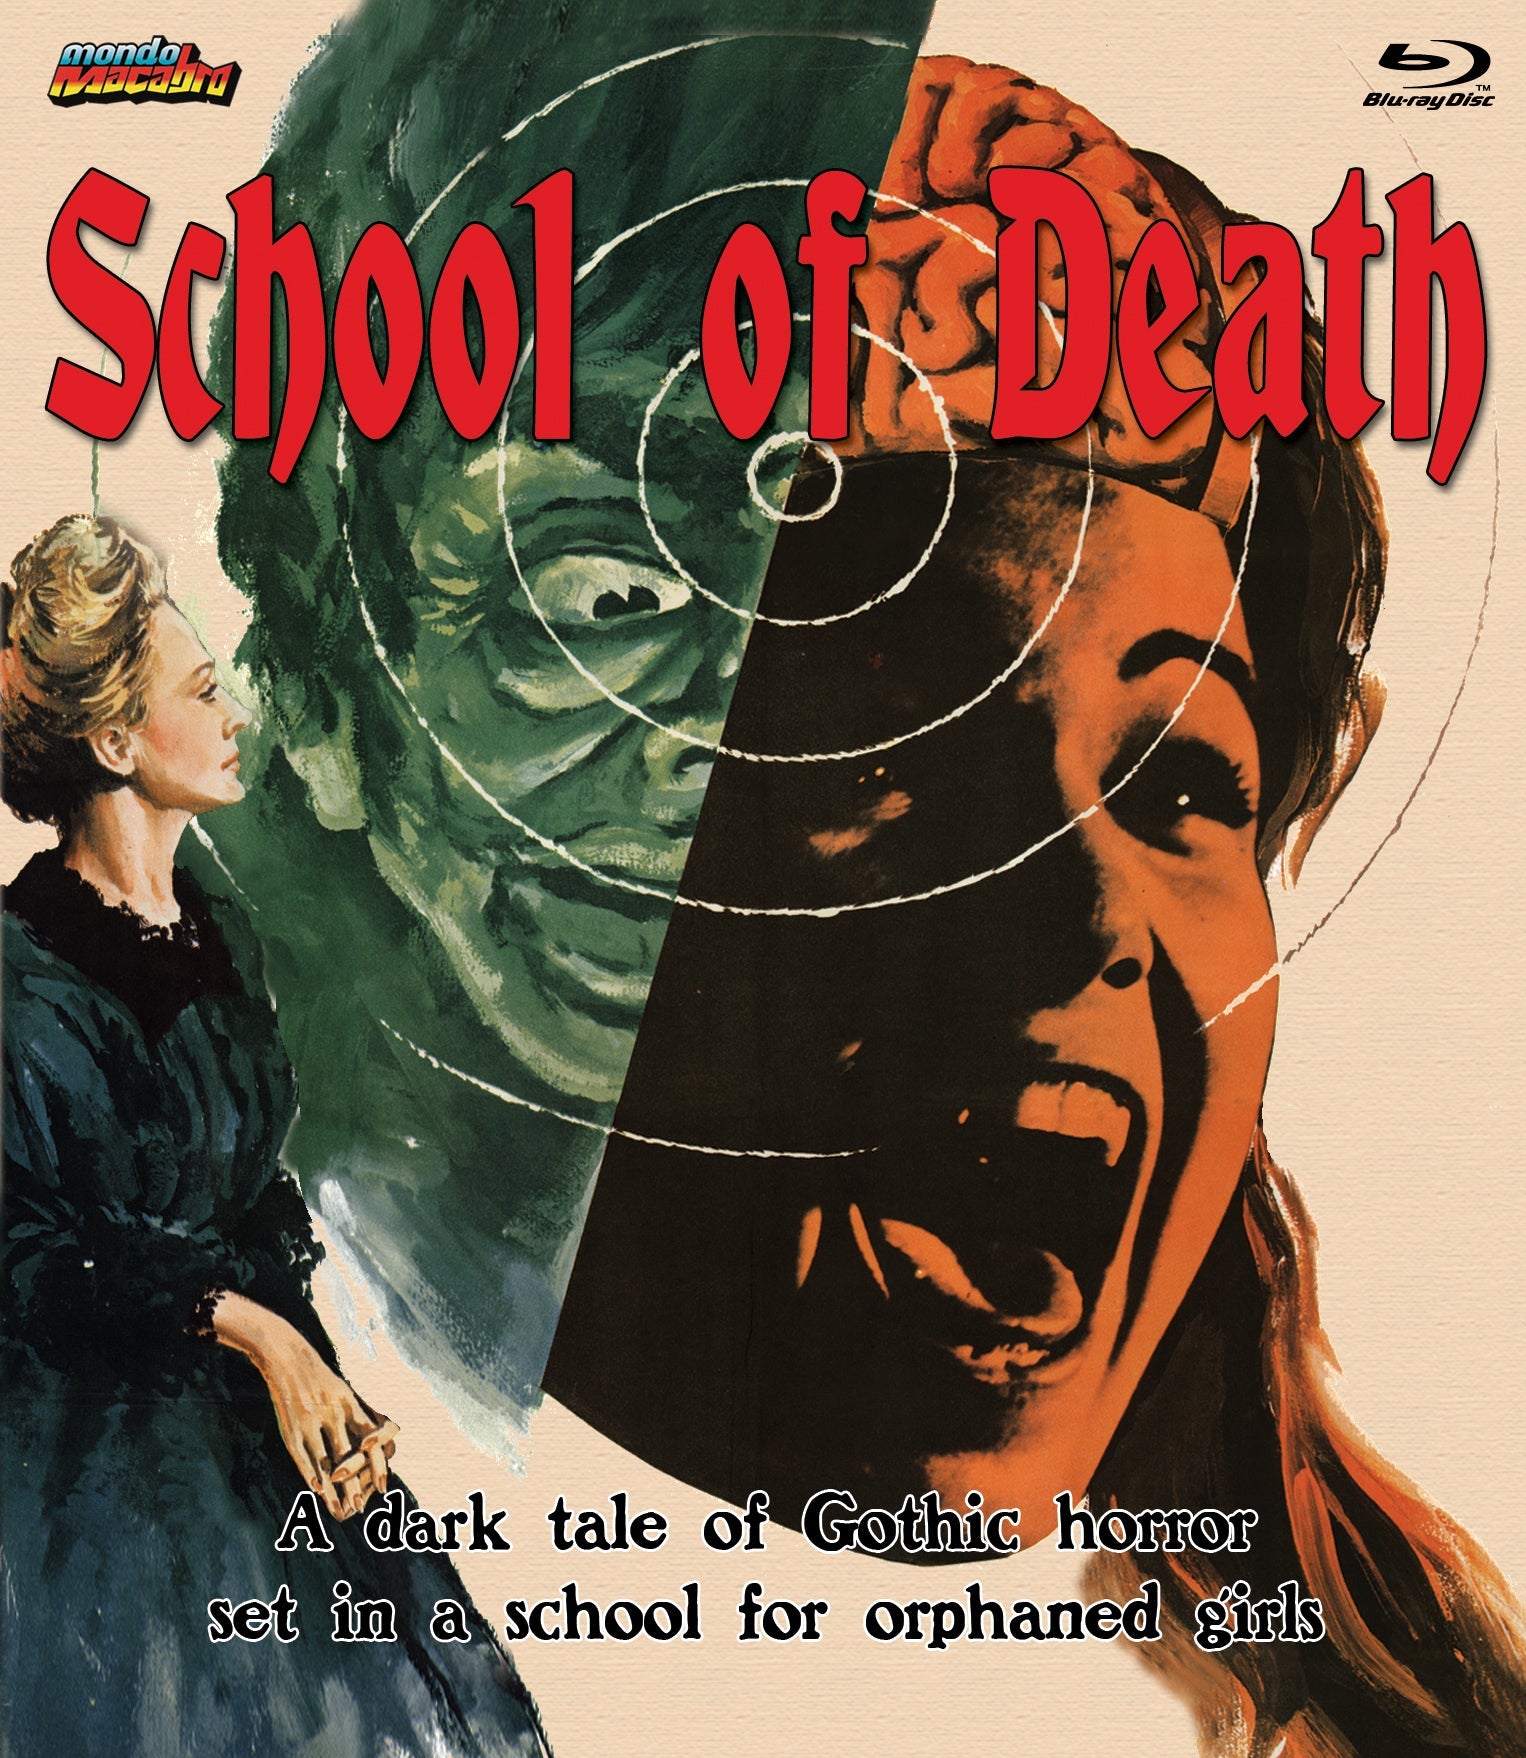 School Of Death Blu-Ray Blu-Ray